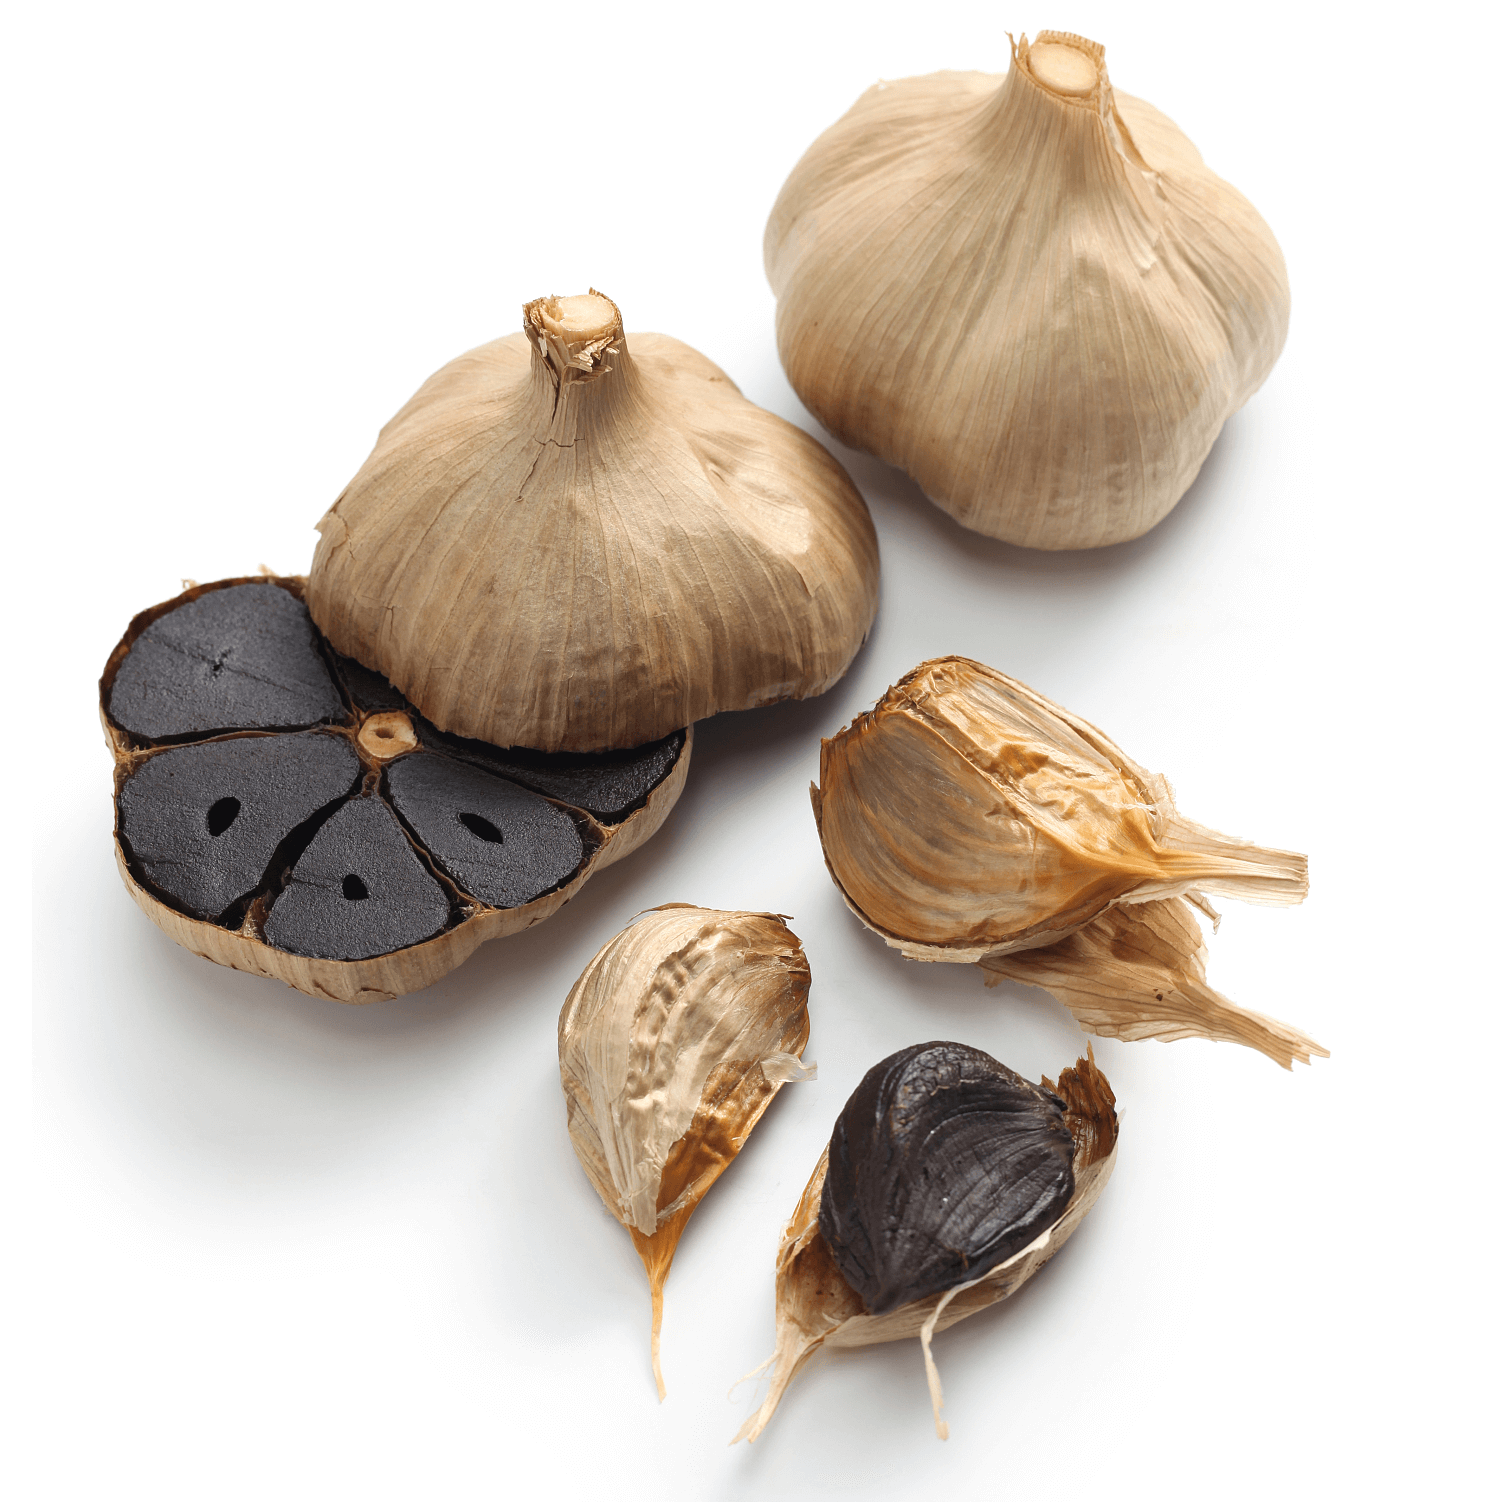 Black Garlic Extract Powder11